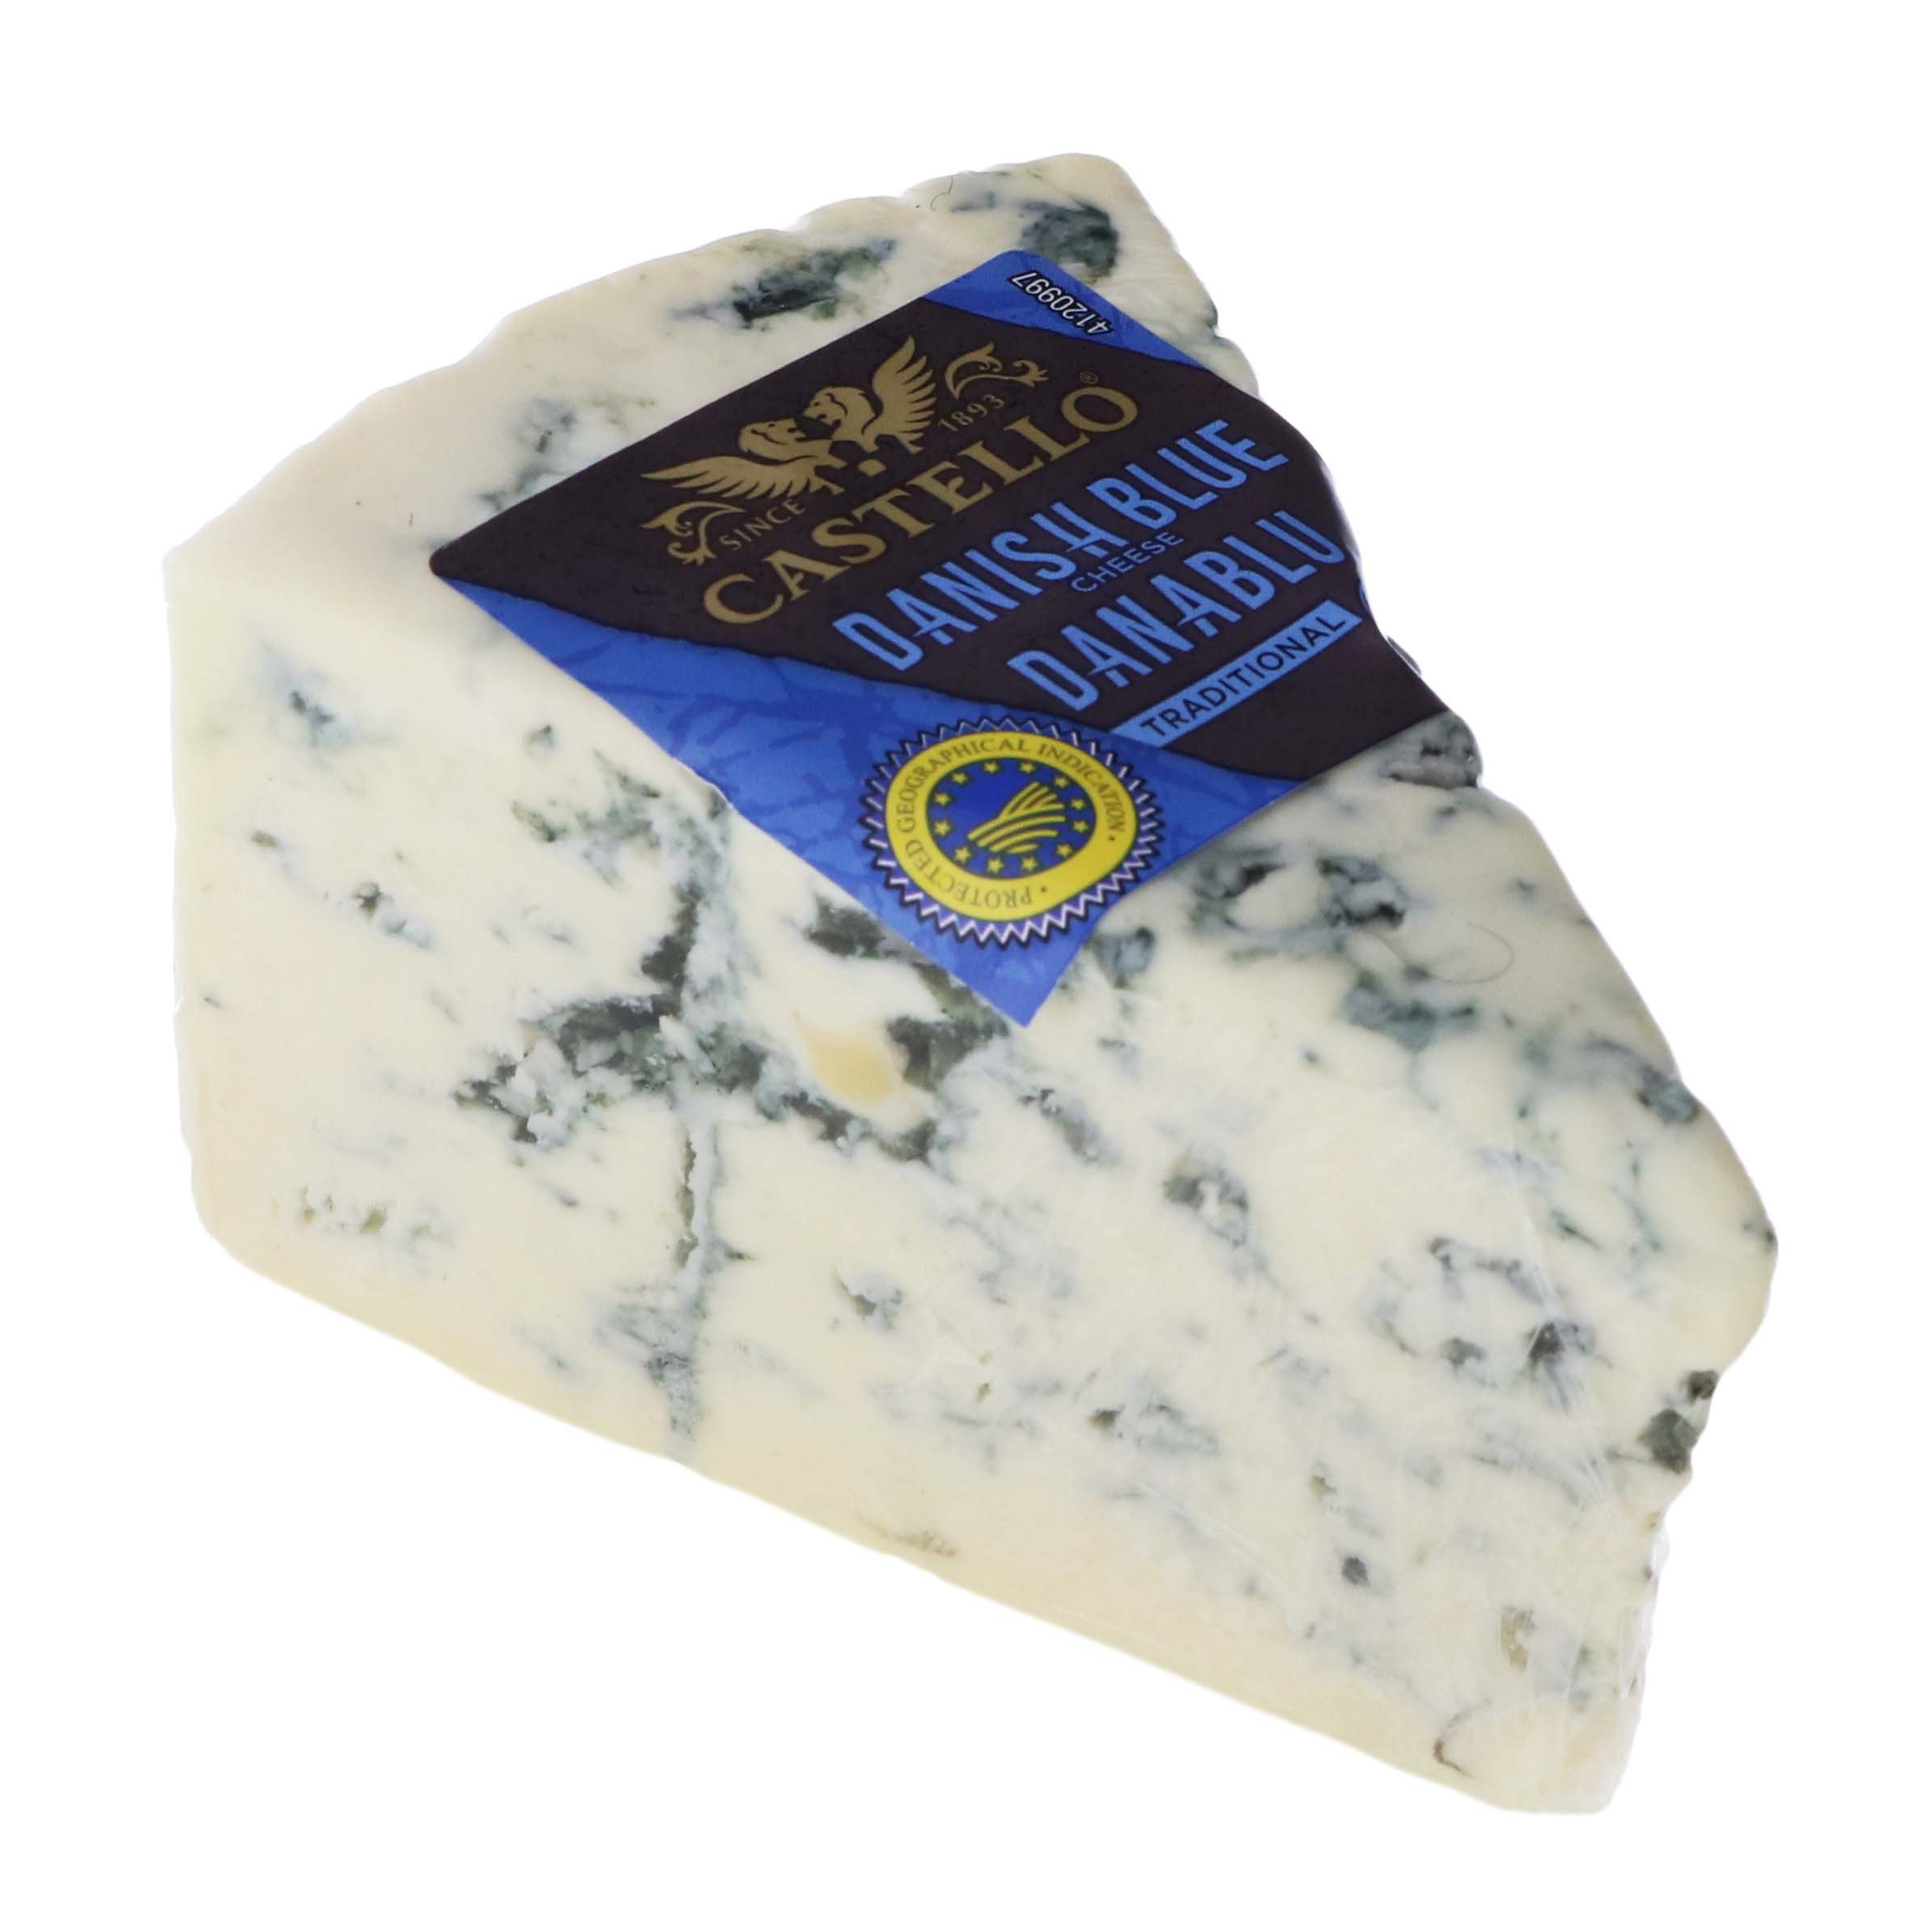 Castello Danish Blue Cheese - Shop Cheese at H-E-B